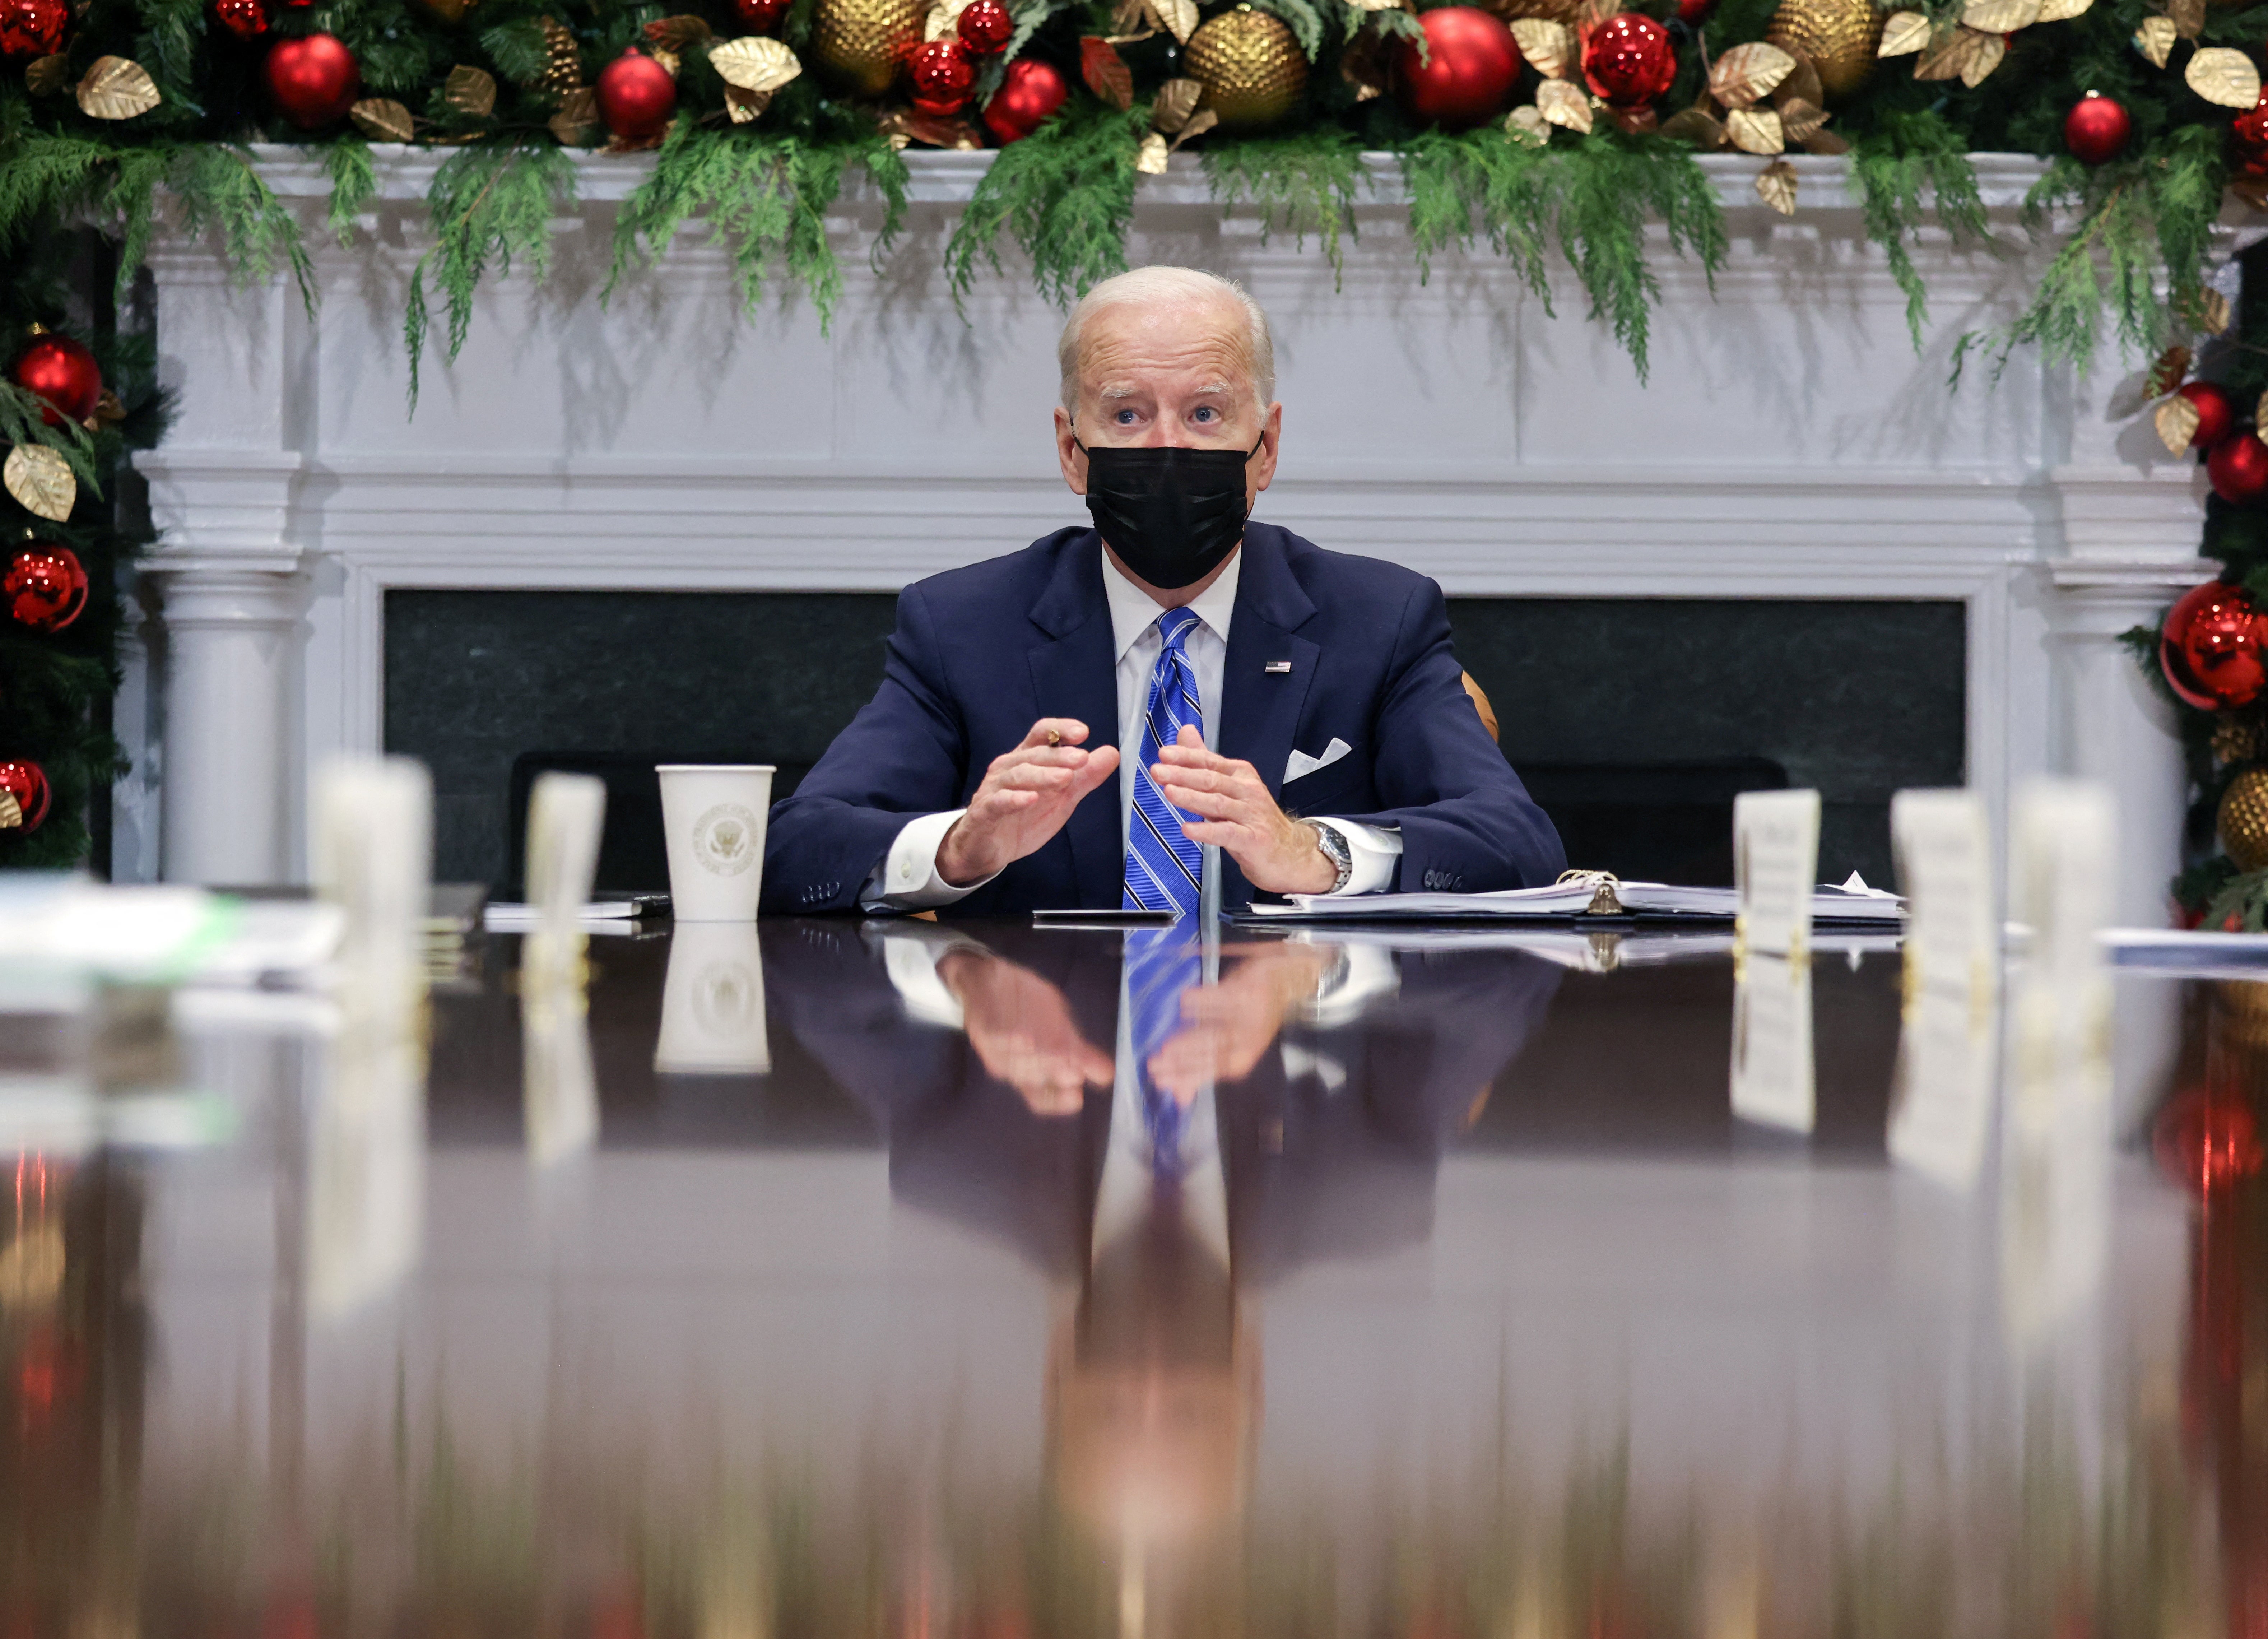 El presidente de EE.UU., Joe Biden, advirtió que el invierno podría provocar graves enfermedades y la muerte a los no vacunados, tras reunirse con los miembros del Equipo de respuesta al covid-19 de la Casa Blanca